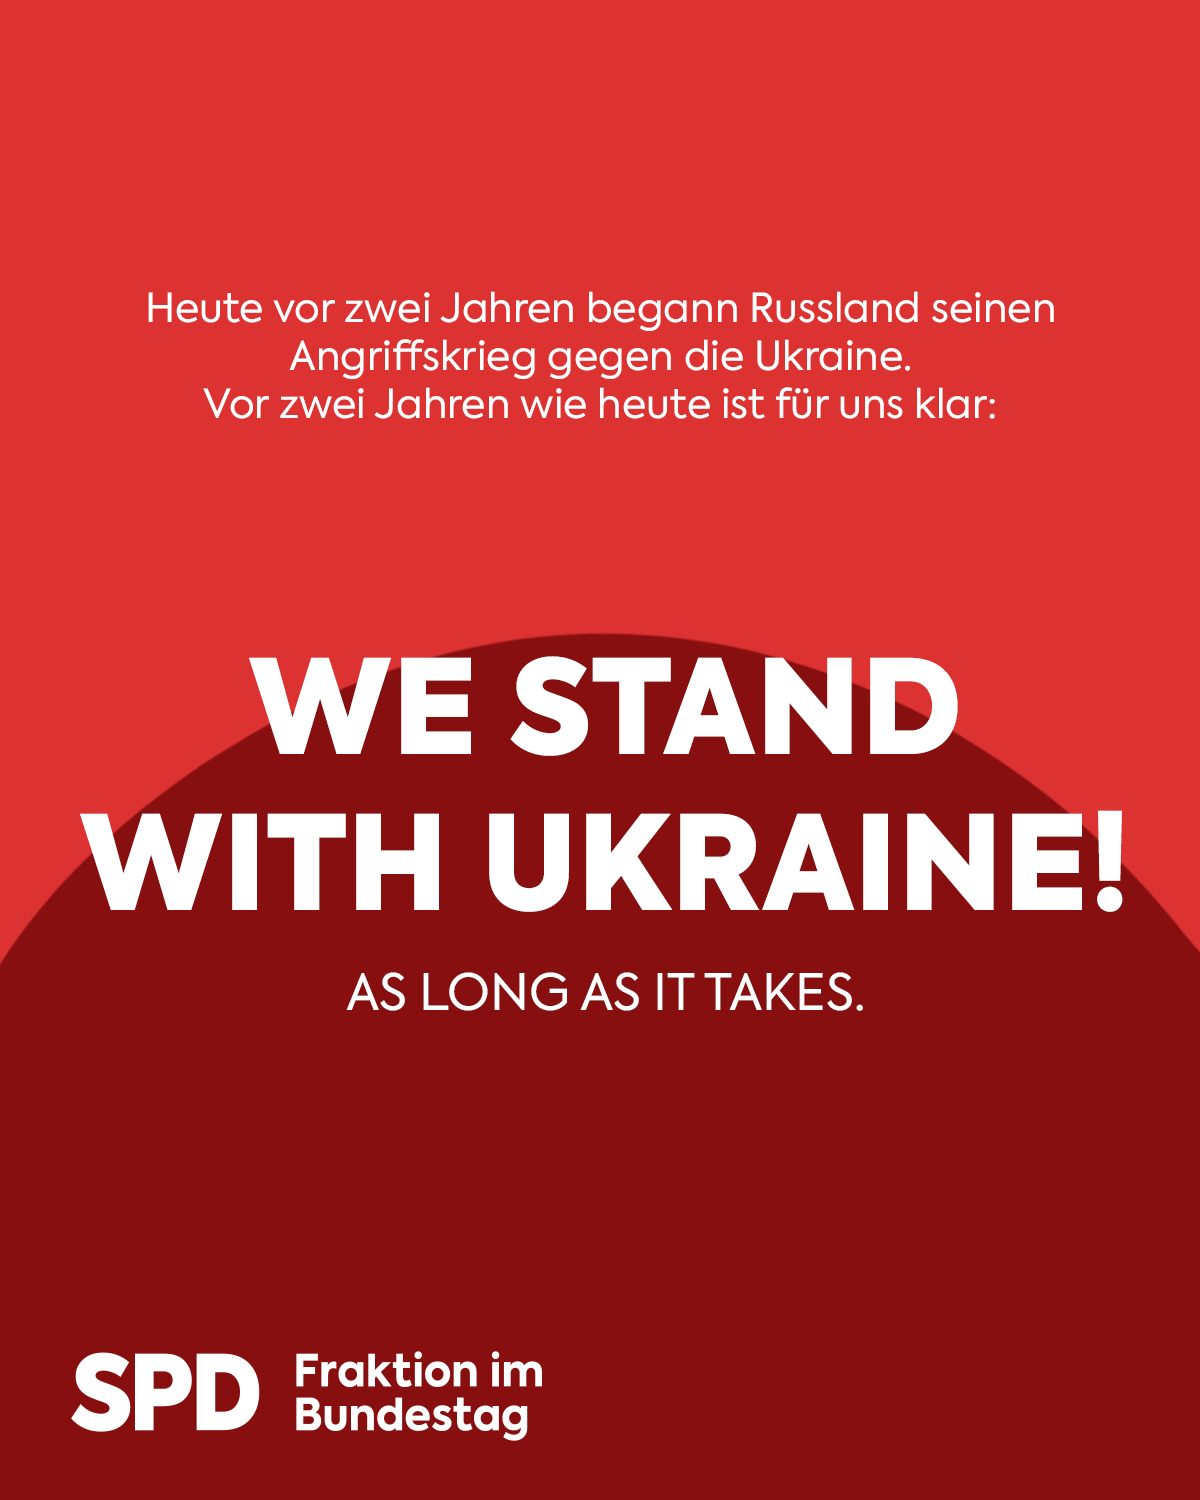 Wir bleiben an der Seite der Ukraine stehen! As long as it takes.